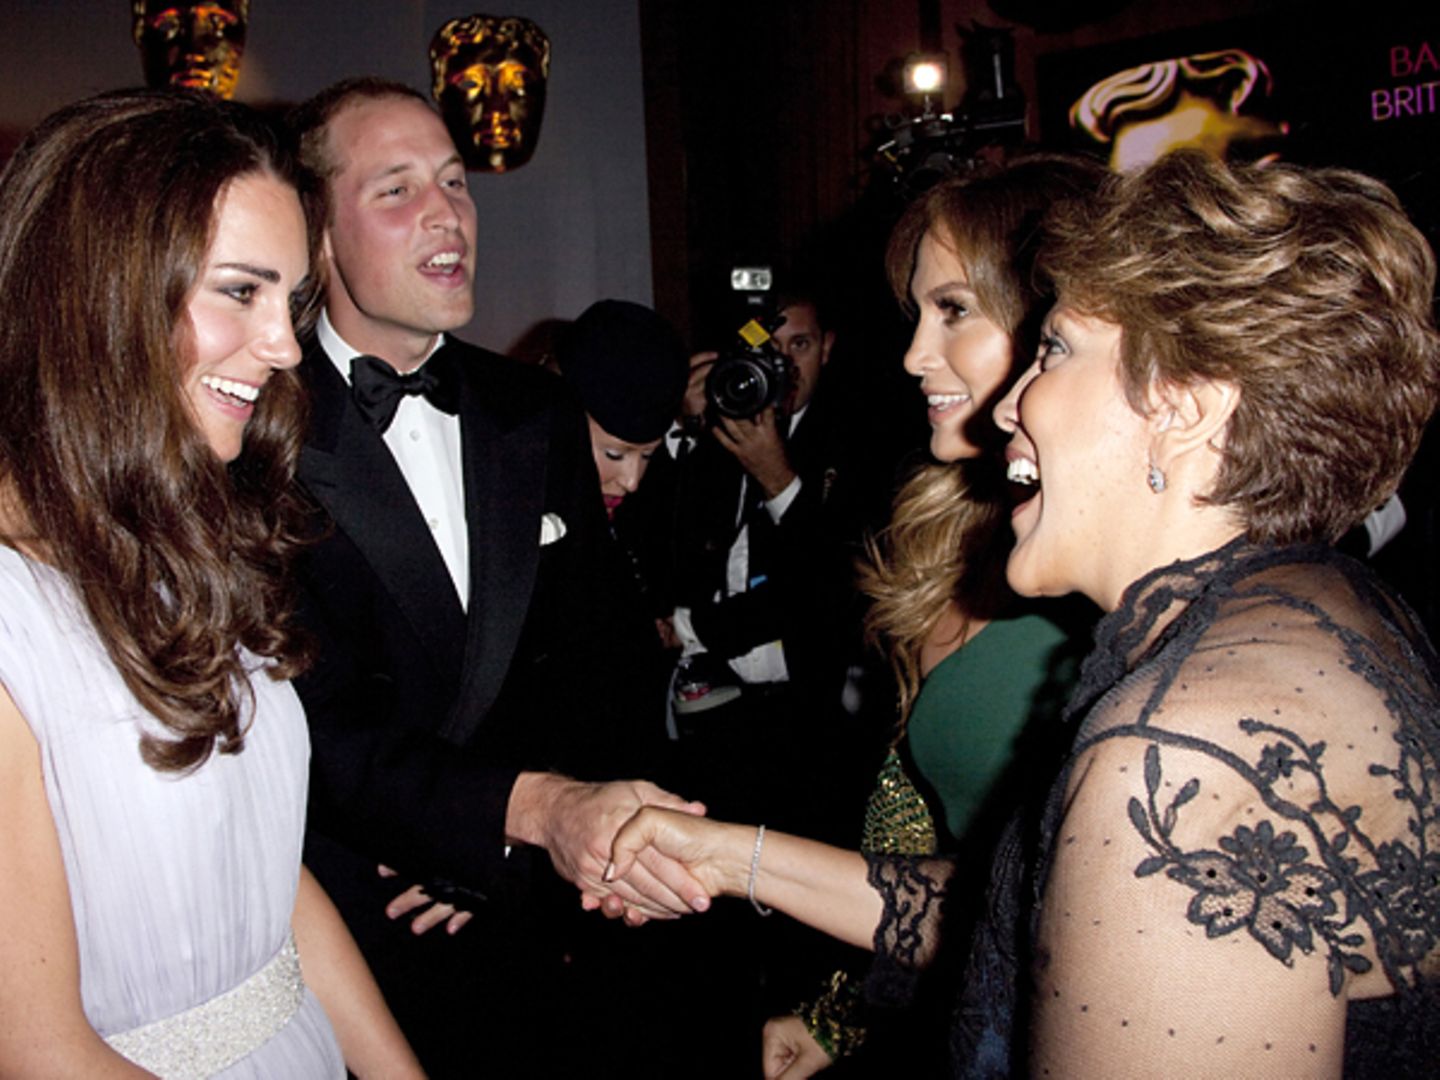 Staatsbesuch William und Kate: Bei der Veranstaltung treffen Kate un William auf viel Prominenz wie Jennifer Lopez mit ihrer Mut